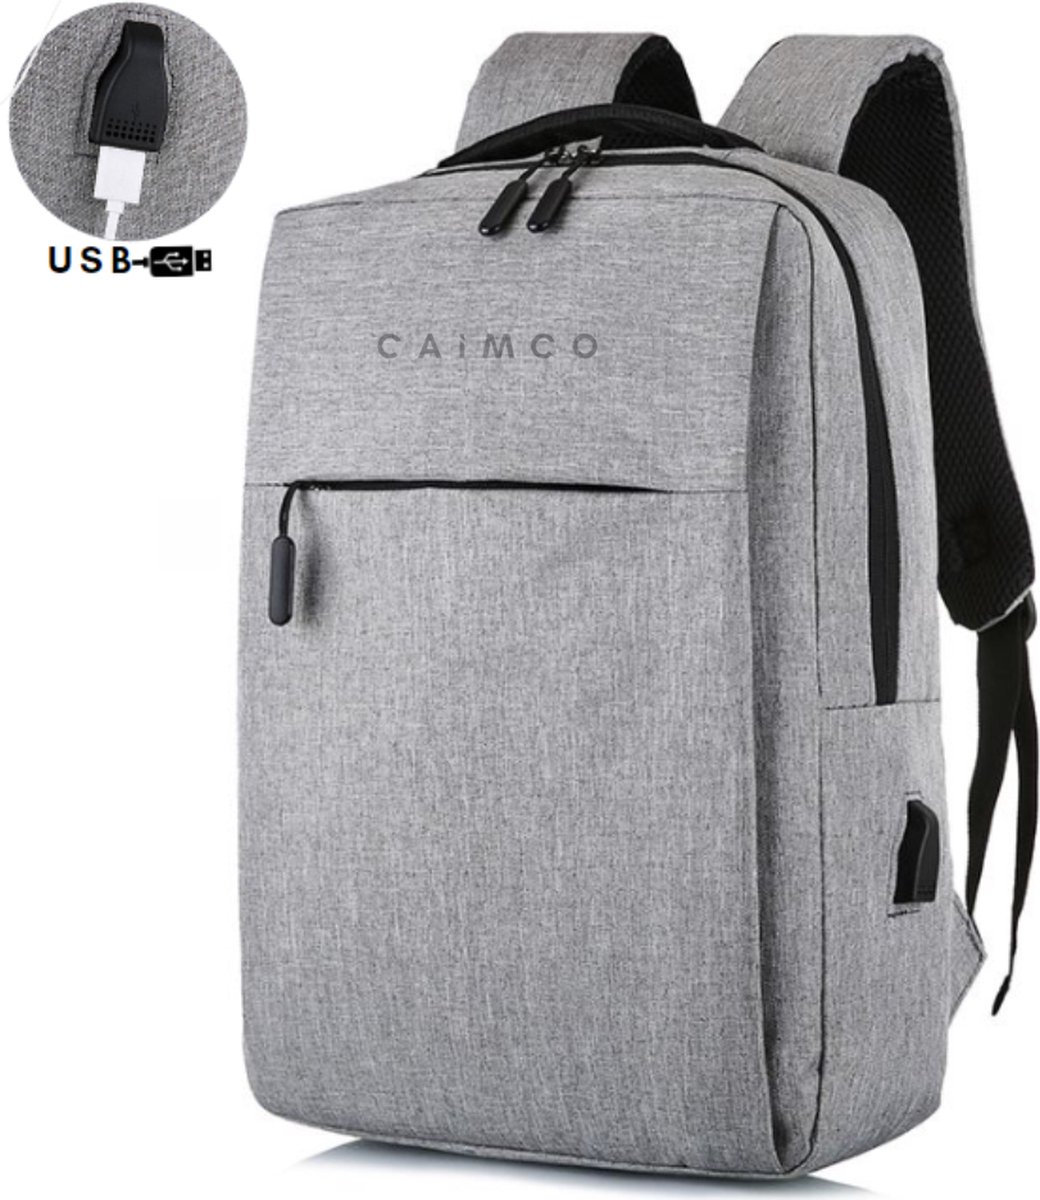 Rugzak - Caimco® Grijs - Laptop Rugtas - Inclusief USB-aansluiting - Jongens - Heren - Dames - Travel Bag - Spatwaterdicht